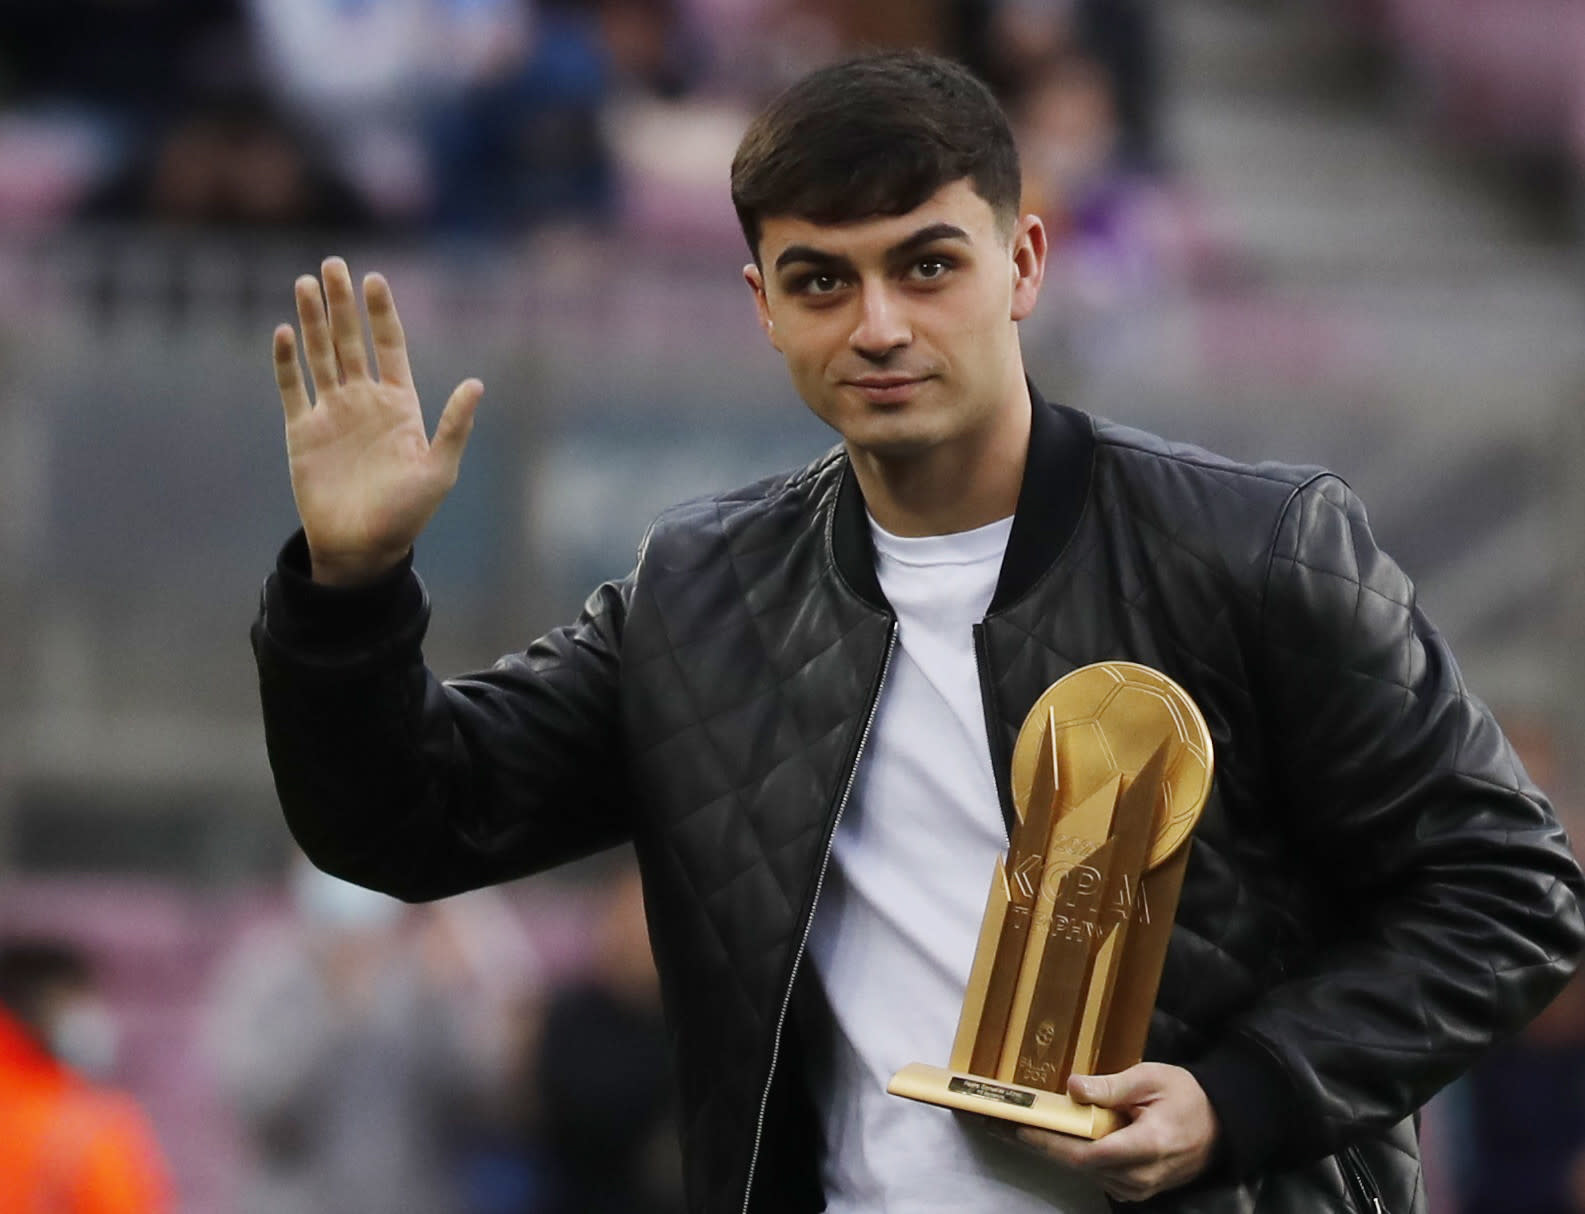 פדרי שחקן ברצלונה מציג את פרס קופה לשחקן הצעיר של השנה